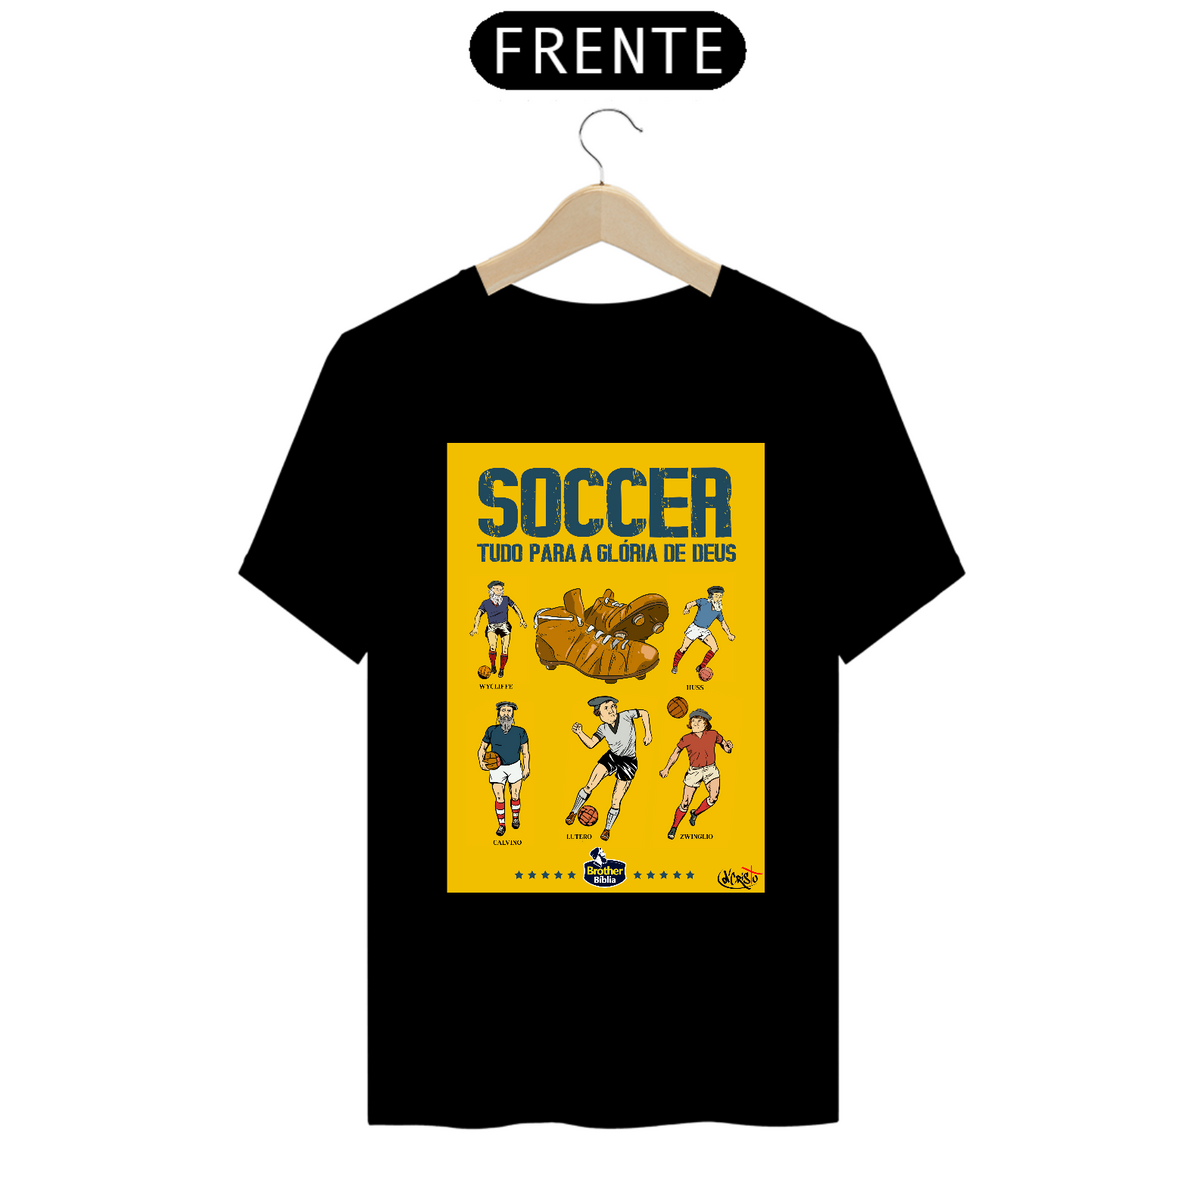 Nome do produto: Camiseta Reformed Football Club (cartaz)